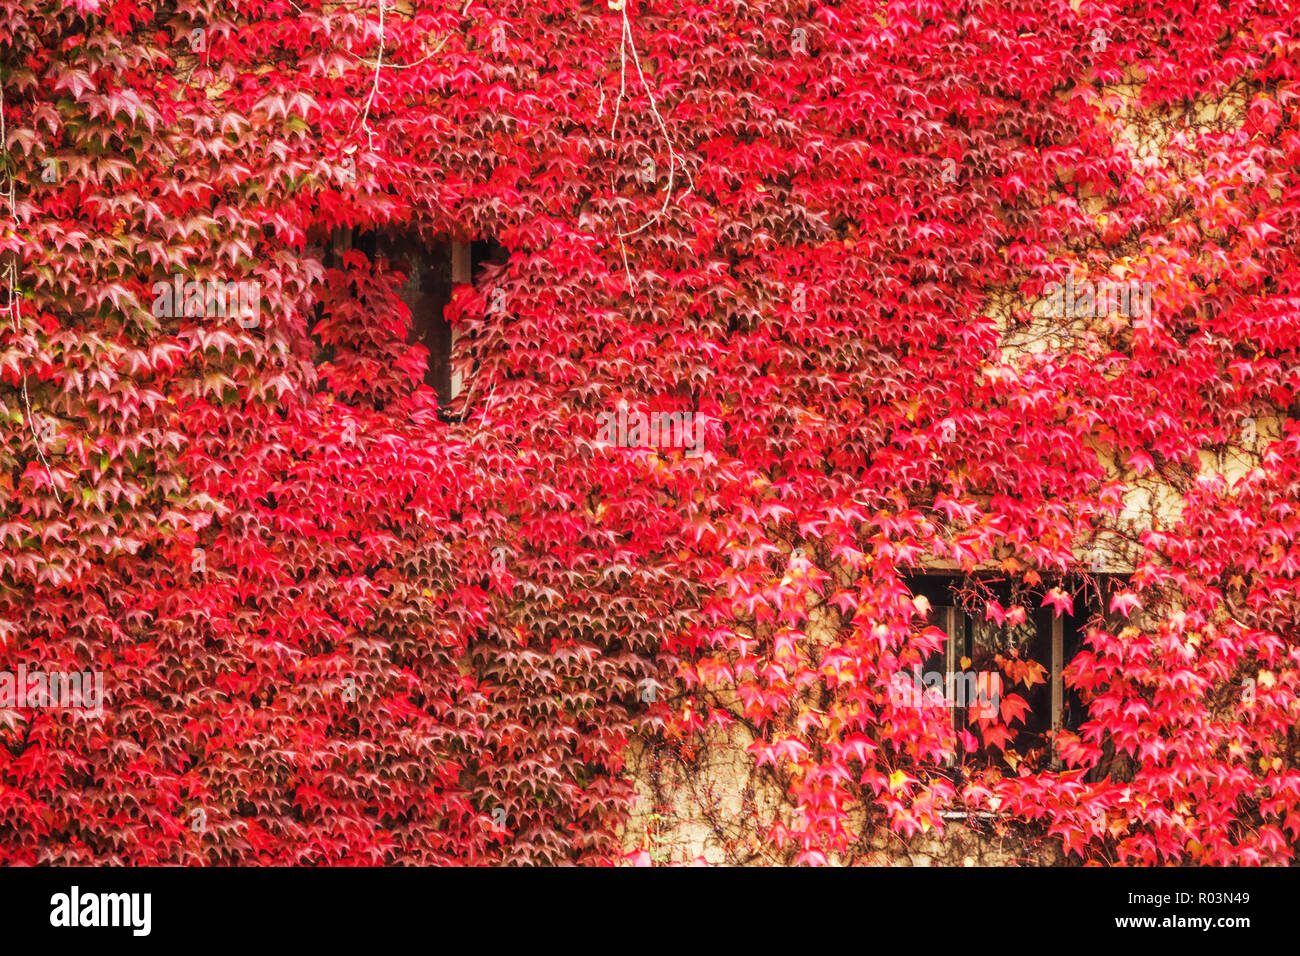 Boston Ivy Fenster Parthenocissus tricuspidata wächst an einer Hauswand, Wien Österreich Herbstrote Blätter Kletterpflanze Herbstfarben Stockfoto